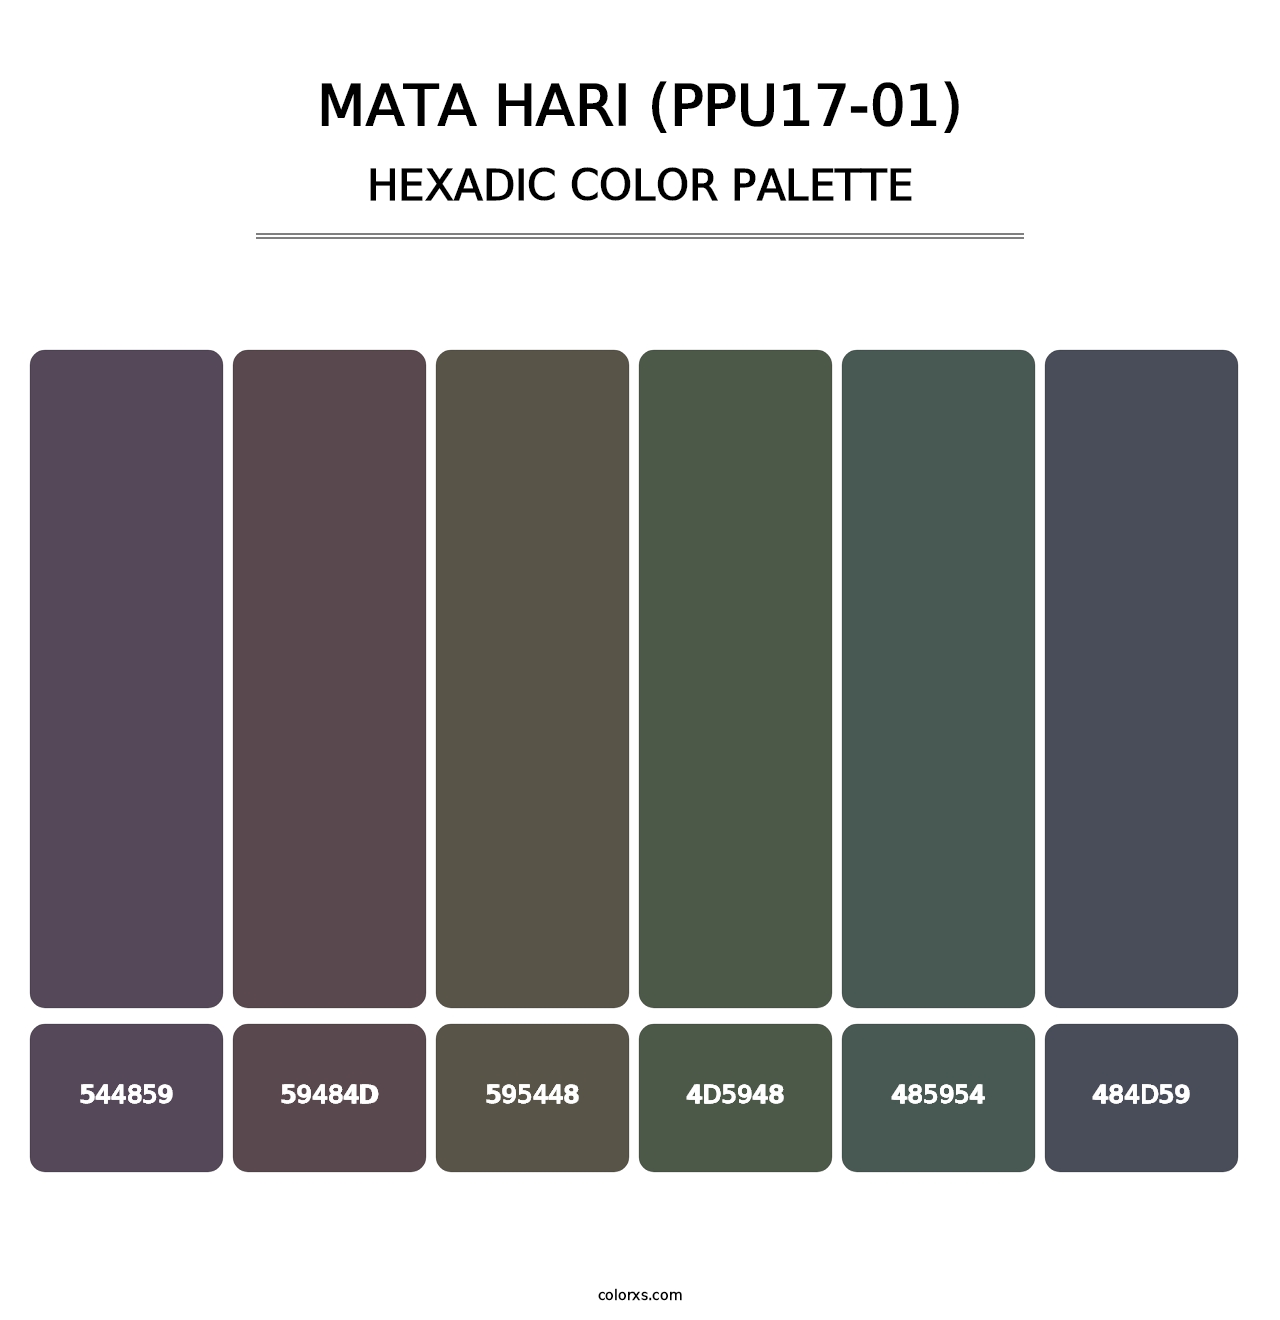 Mata Hari (PPU17-01) - Hexadic Color Palette